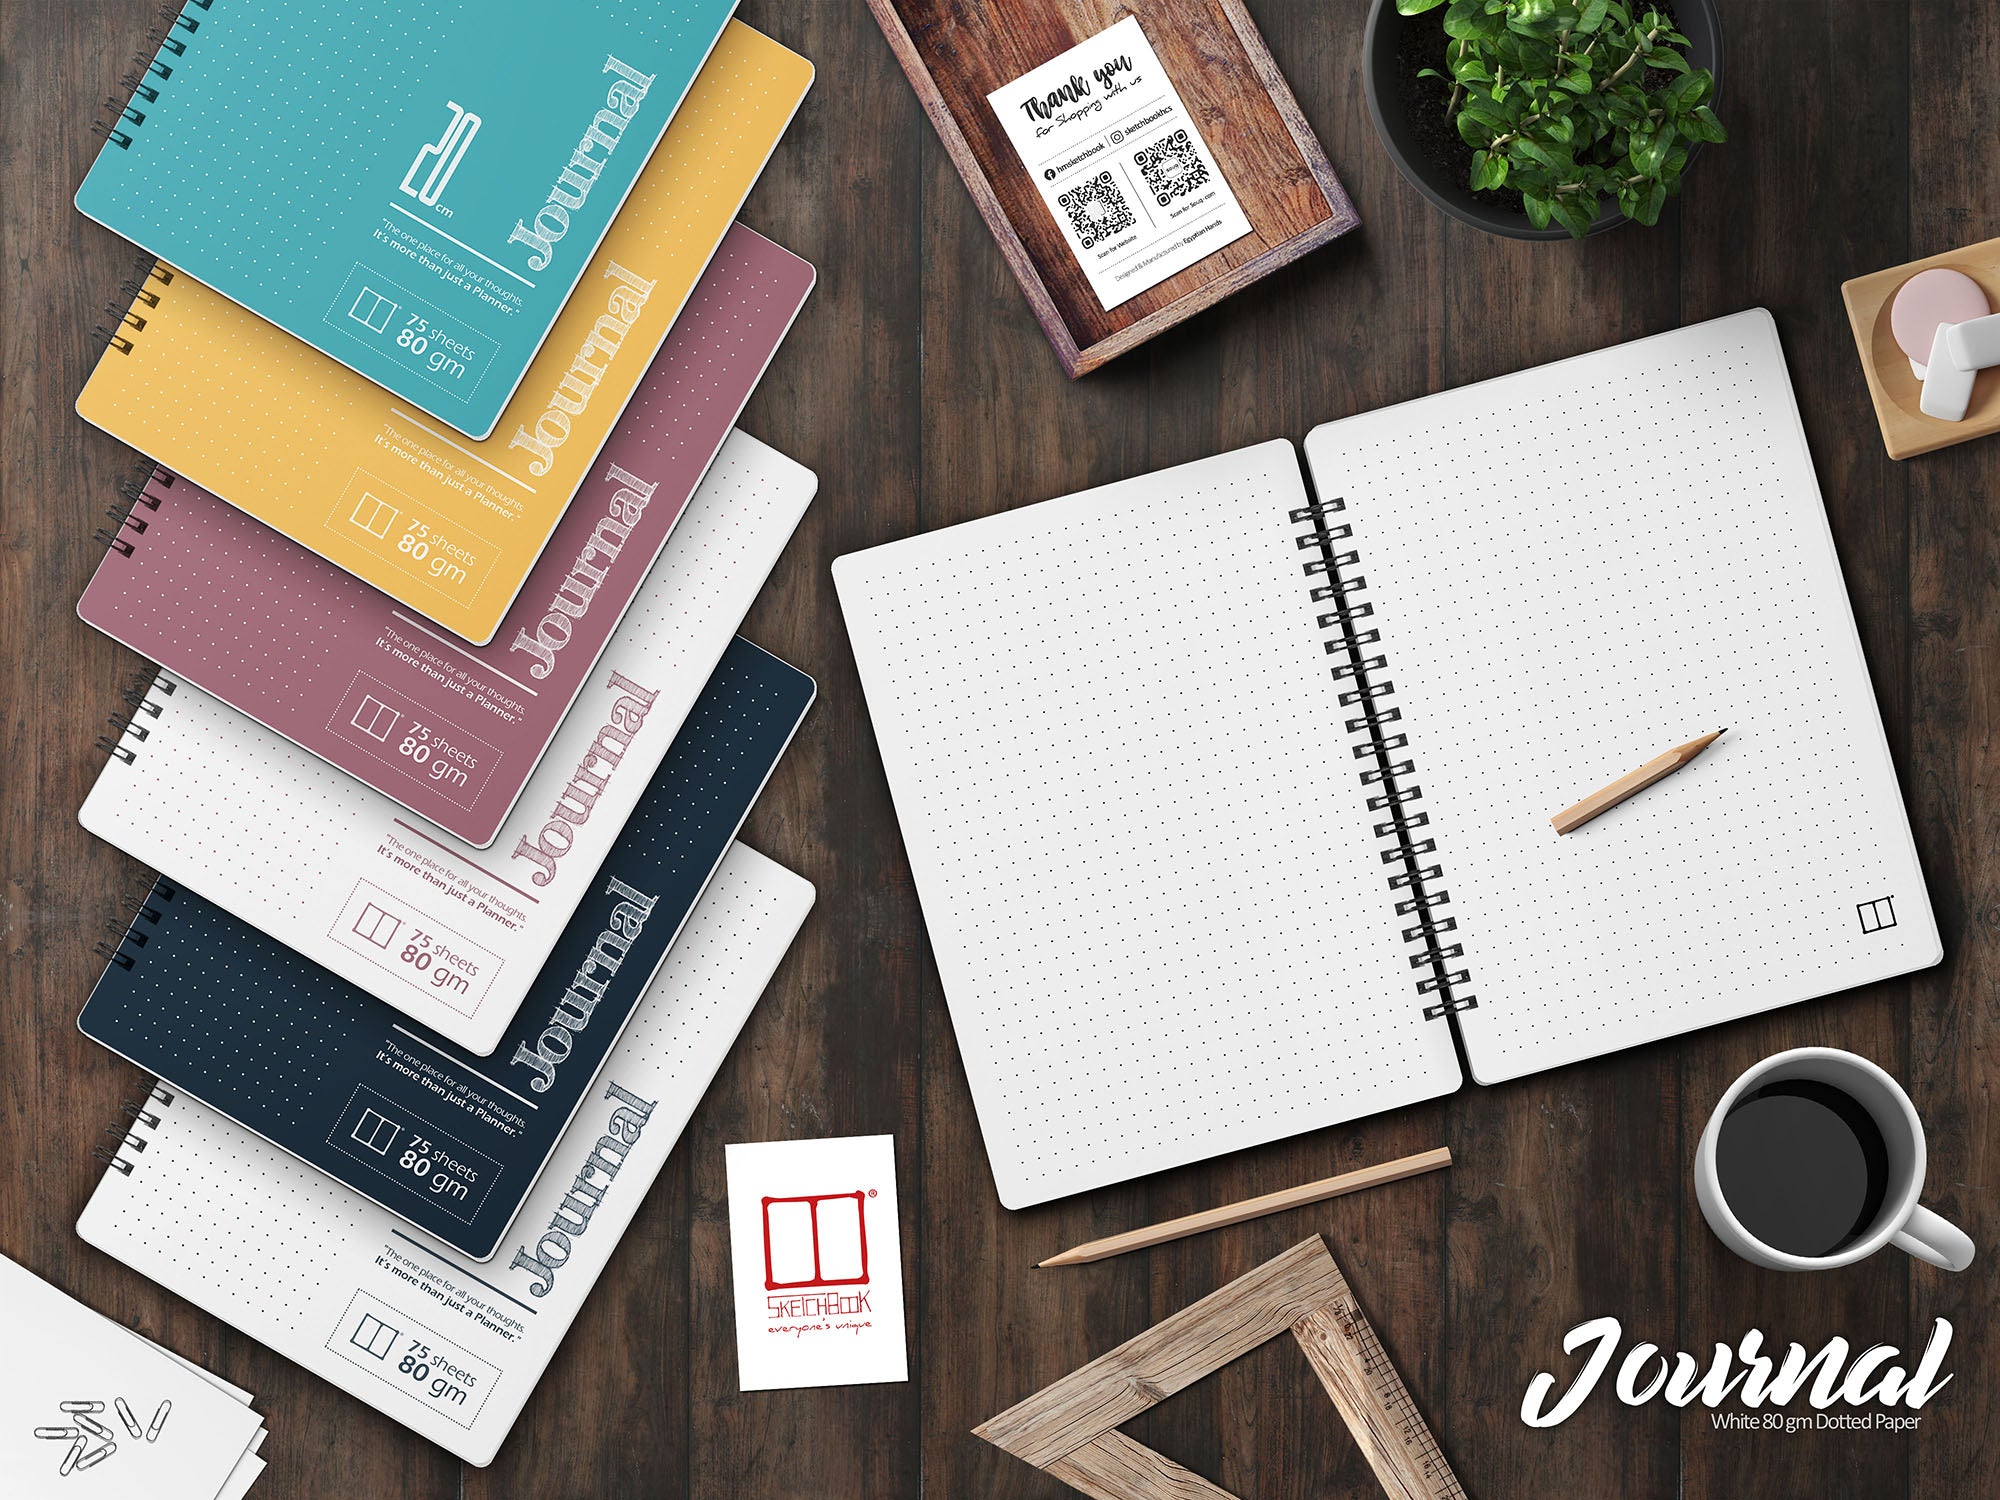 Journal Bundle - 6 Bullet Journal notebooks 7% discount SketchBook Stationery